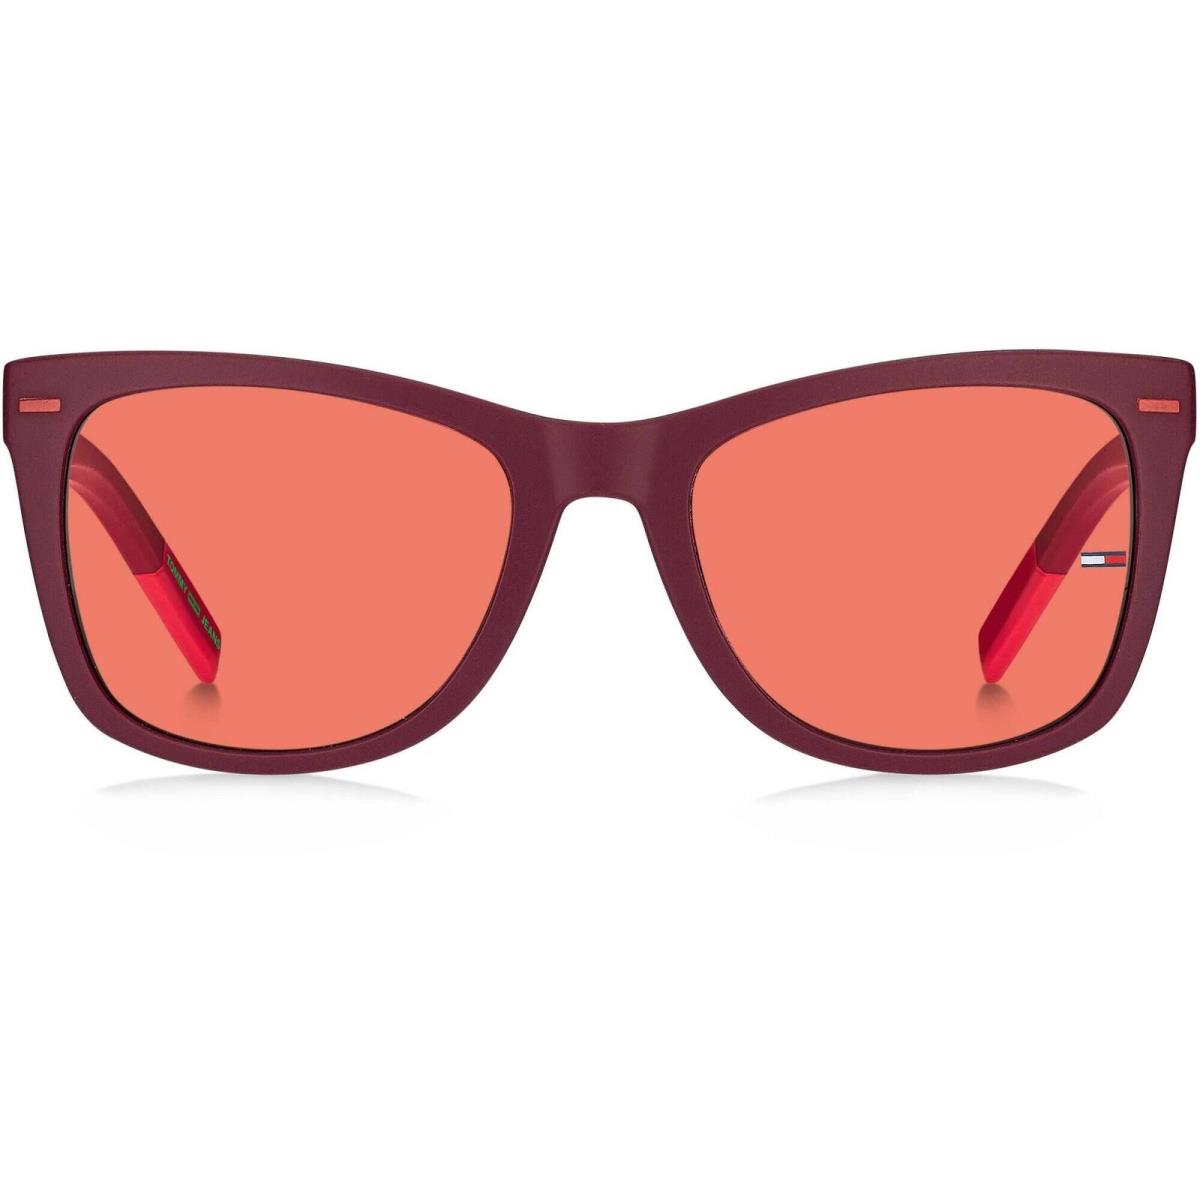 Tommy Hilfiger Unisex Sunglasses Burgundy Red Frame Pink Lens TJ 0041/S 0C8C